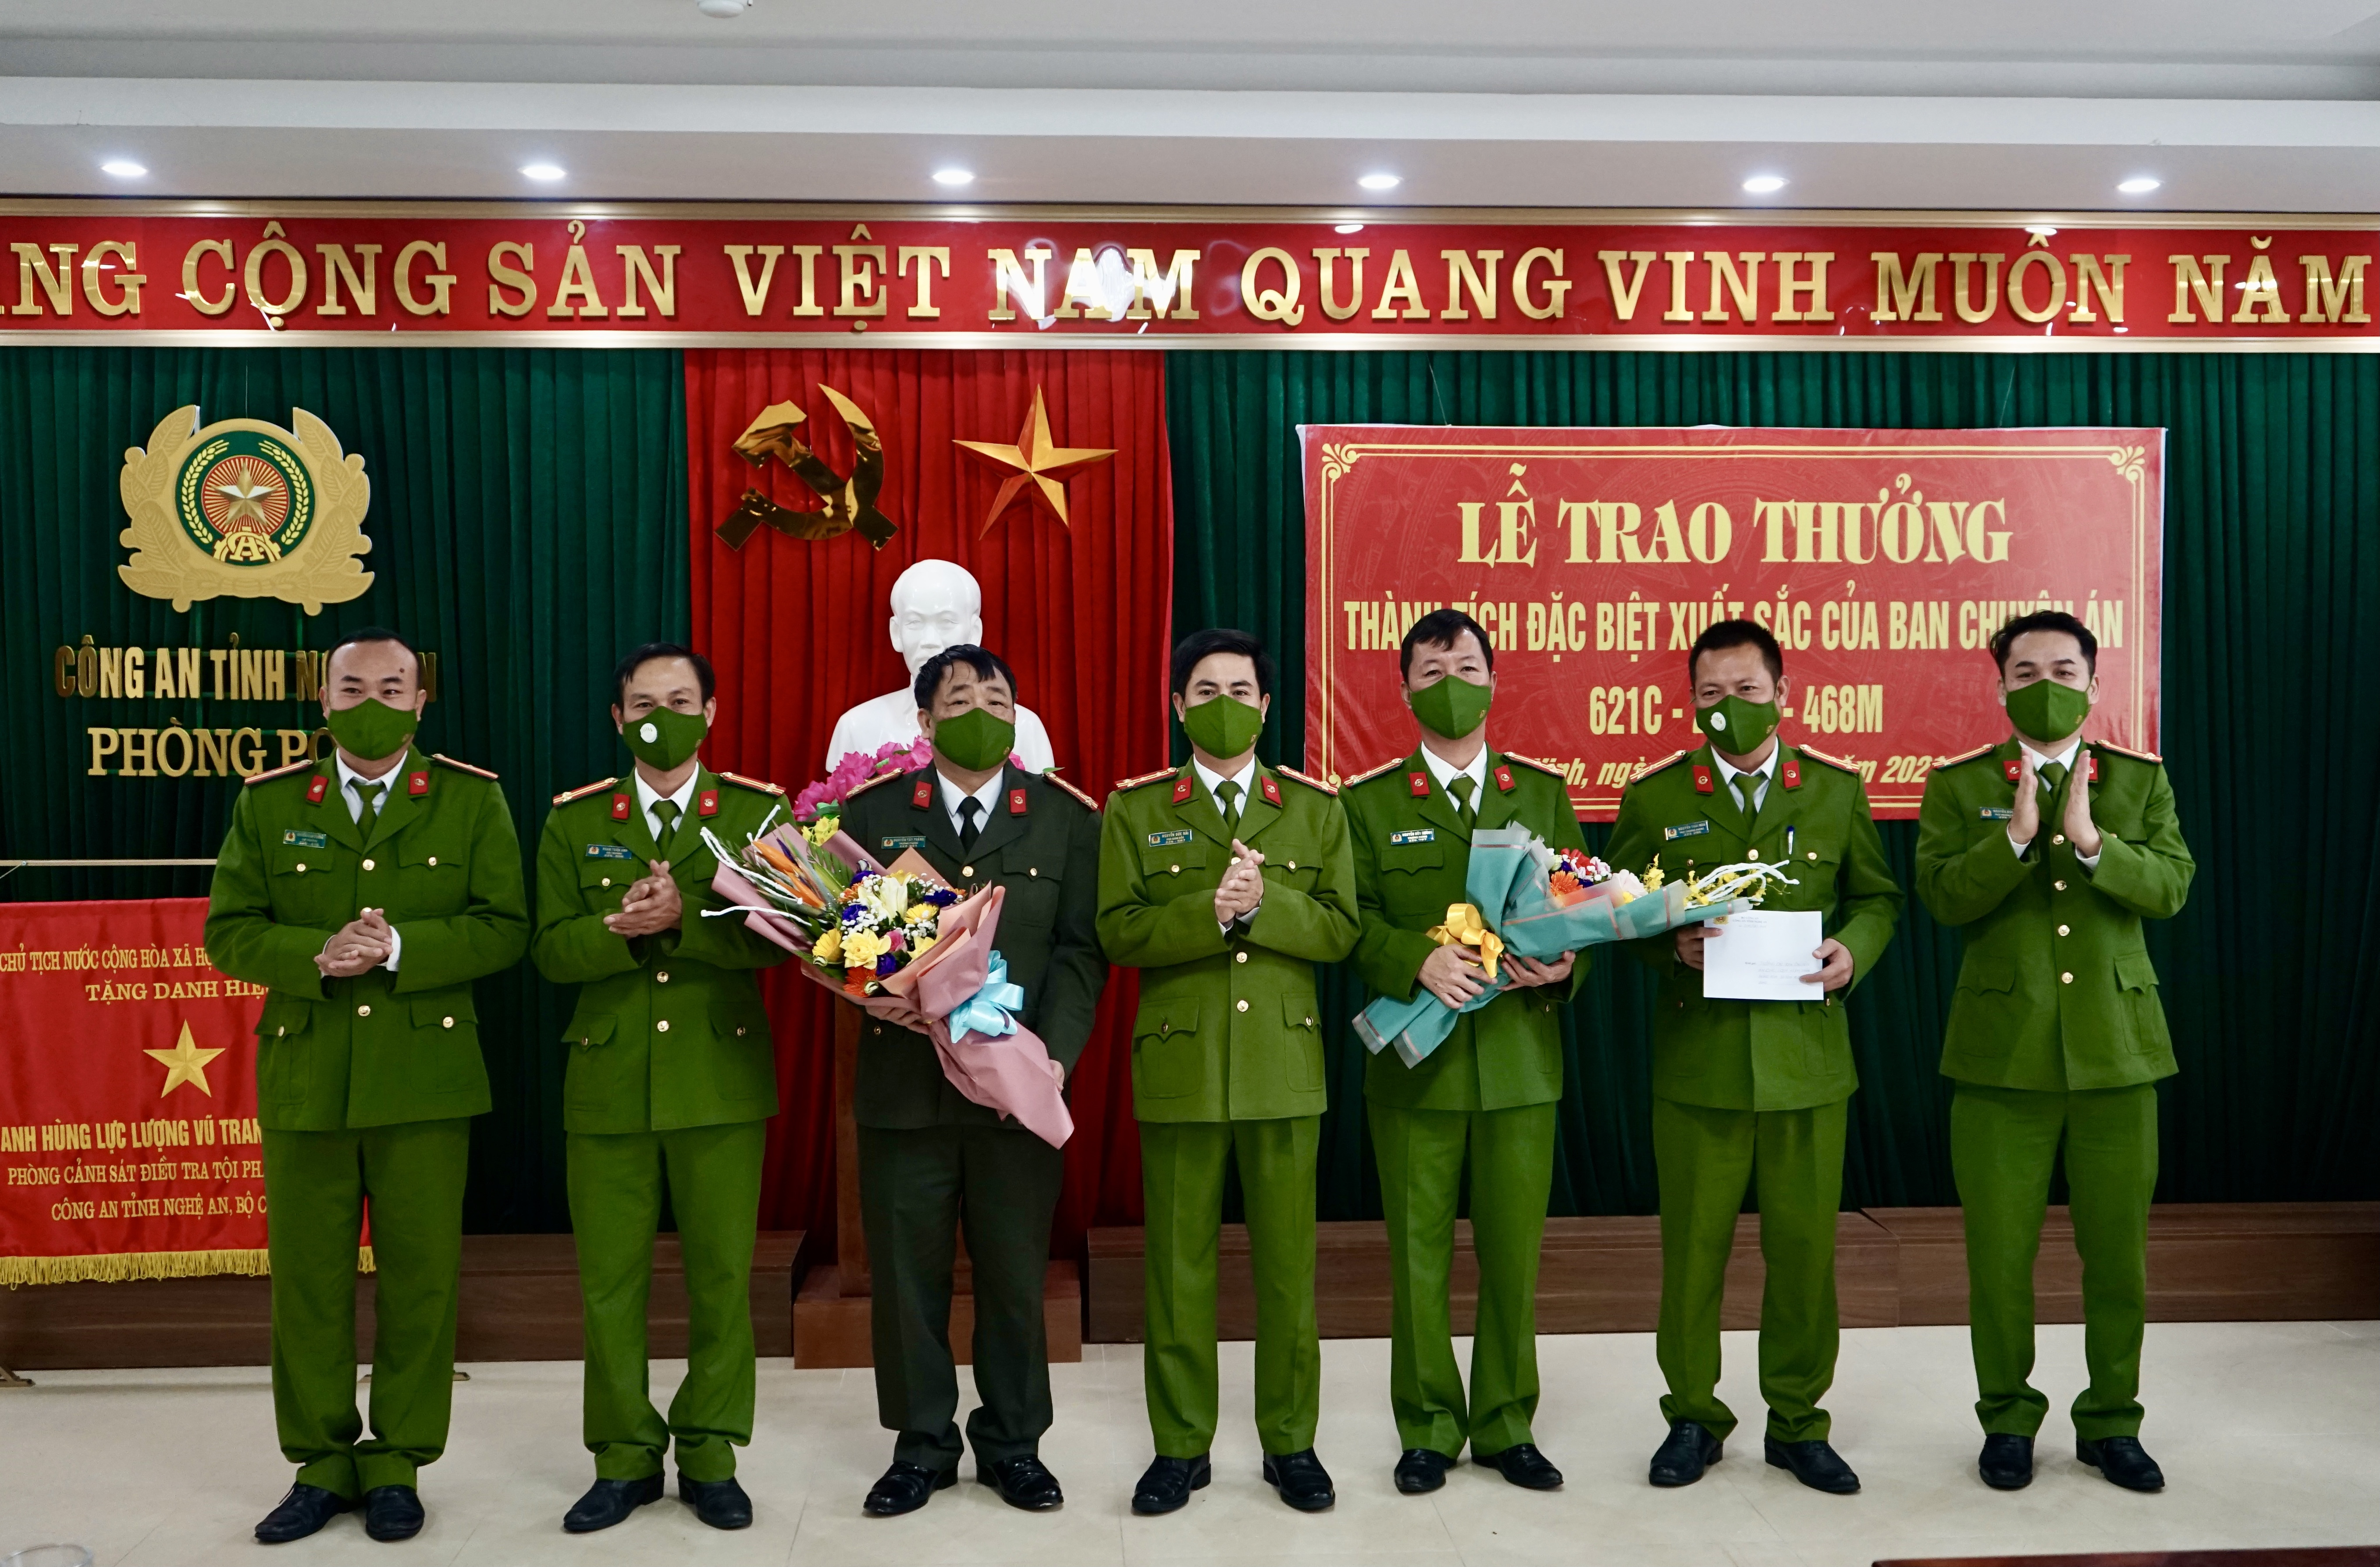 Đồng chí Đại tá Nguyễn Đức Hải, Phó Giám đốc Công an tỉnh chúc mừng và trao thưởng cho Đại diện các ban chuyên án.